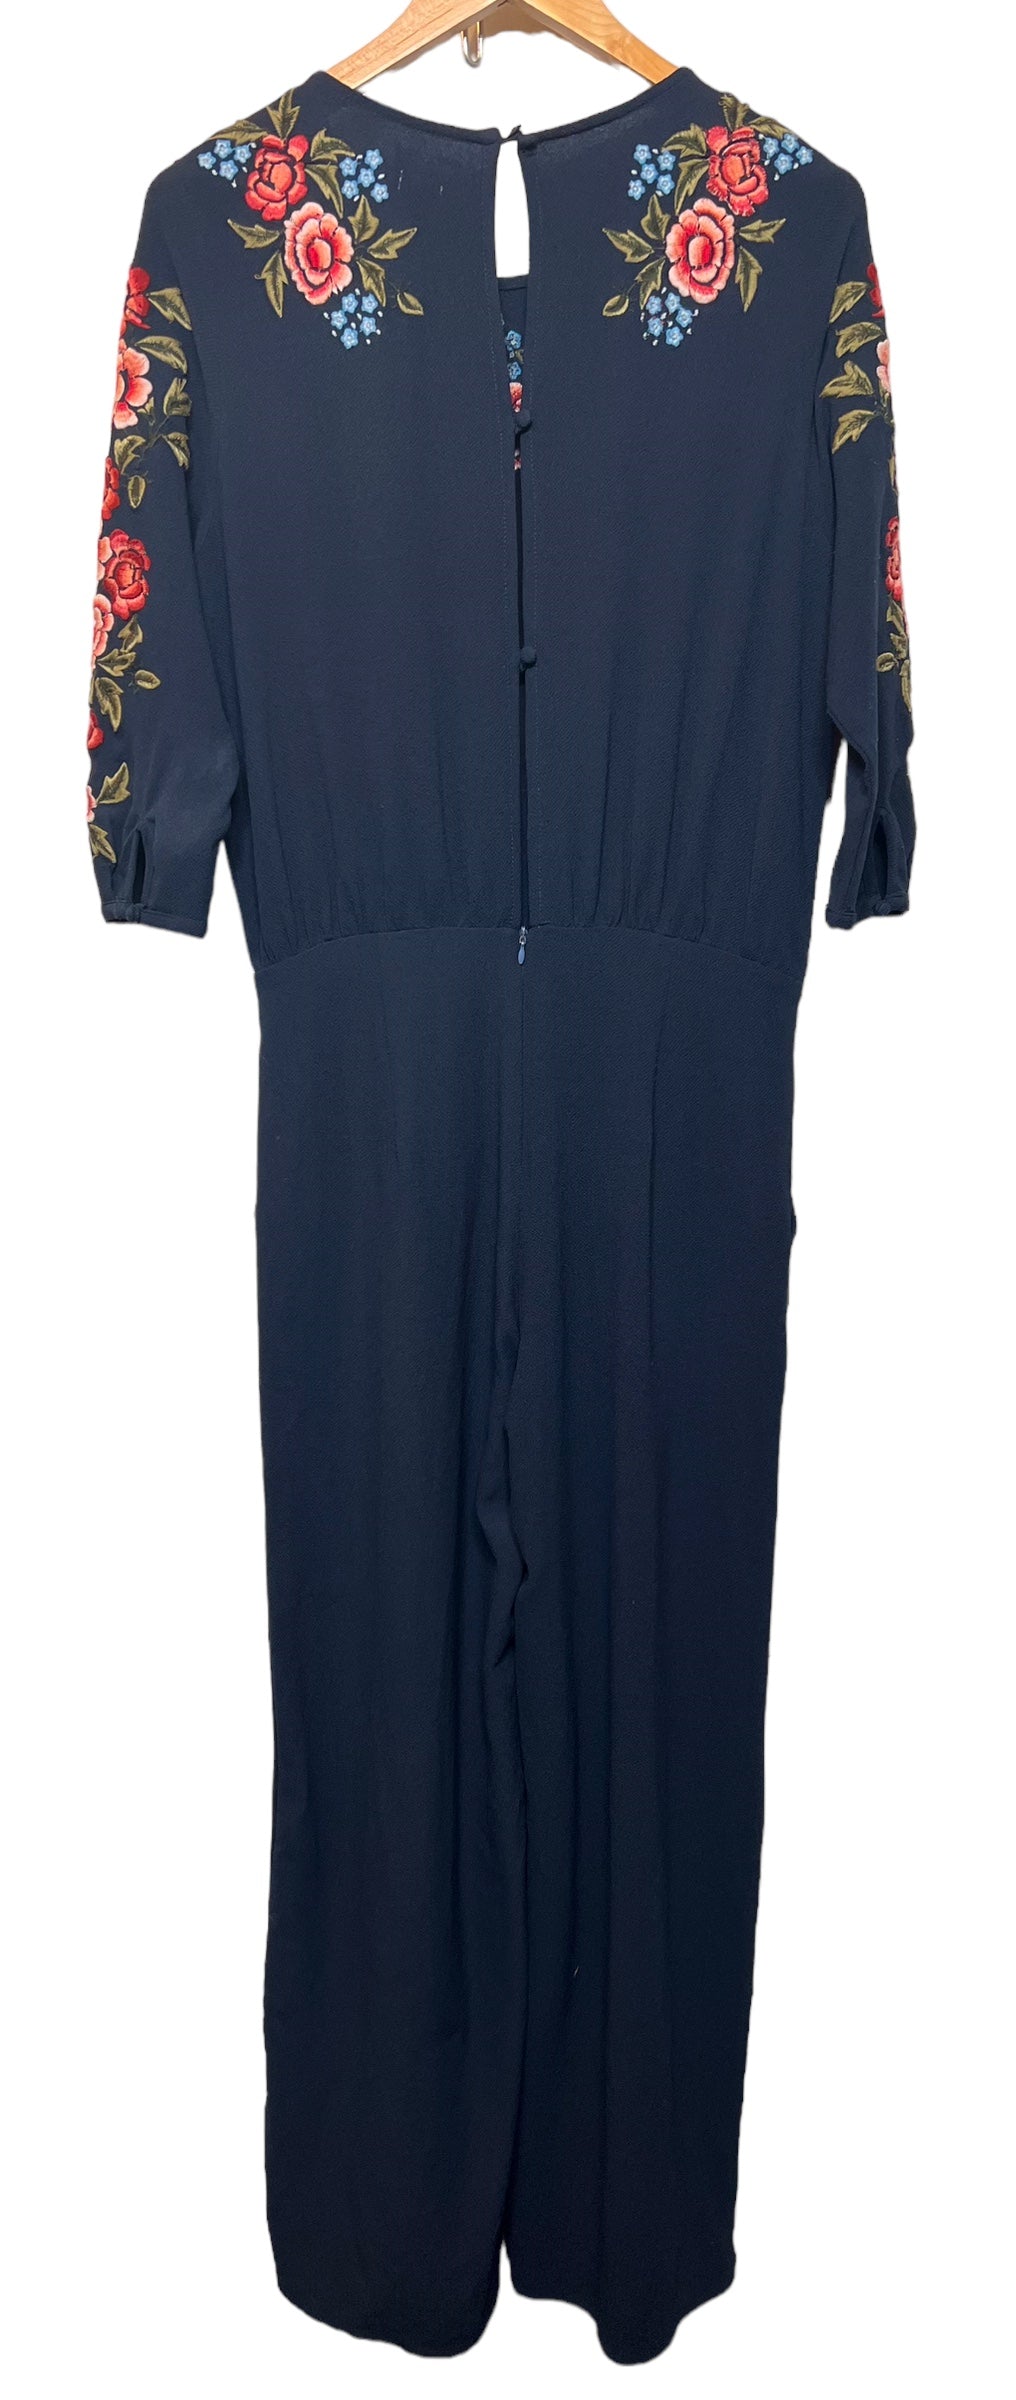 Women’s Navy Blue Floral Jumpsuit (Size L)